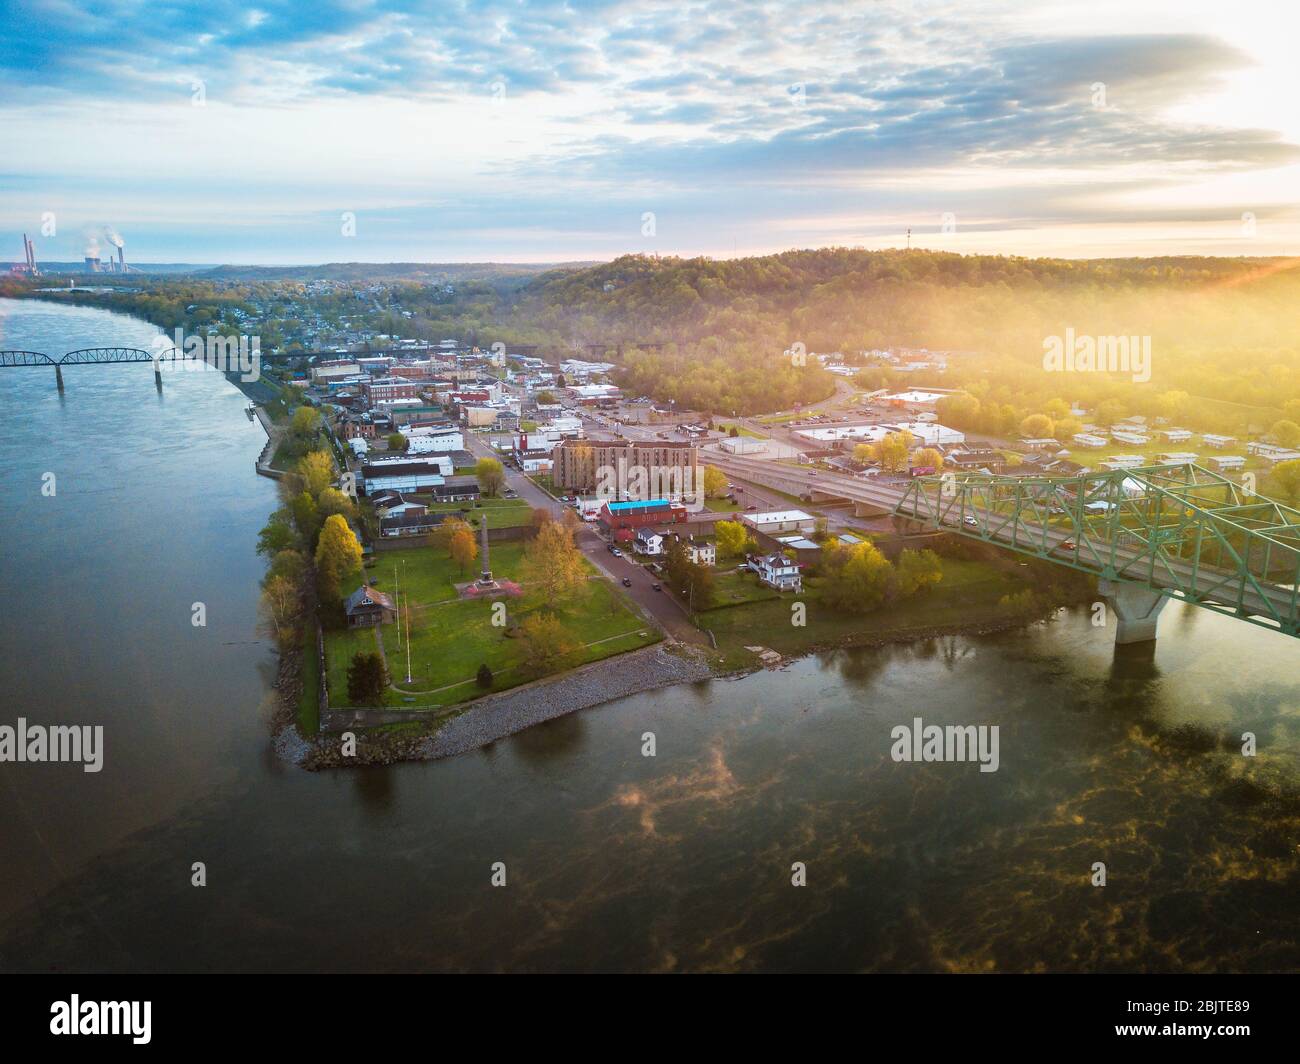 Le soleil levant jette son éclat sur la ville de point Pleasant West Virginia vue de haut en haut où les deux rivières de Kanawha et Ohio se rencontrent. Banque D'Images